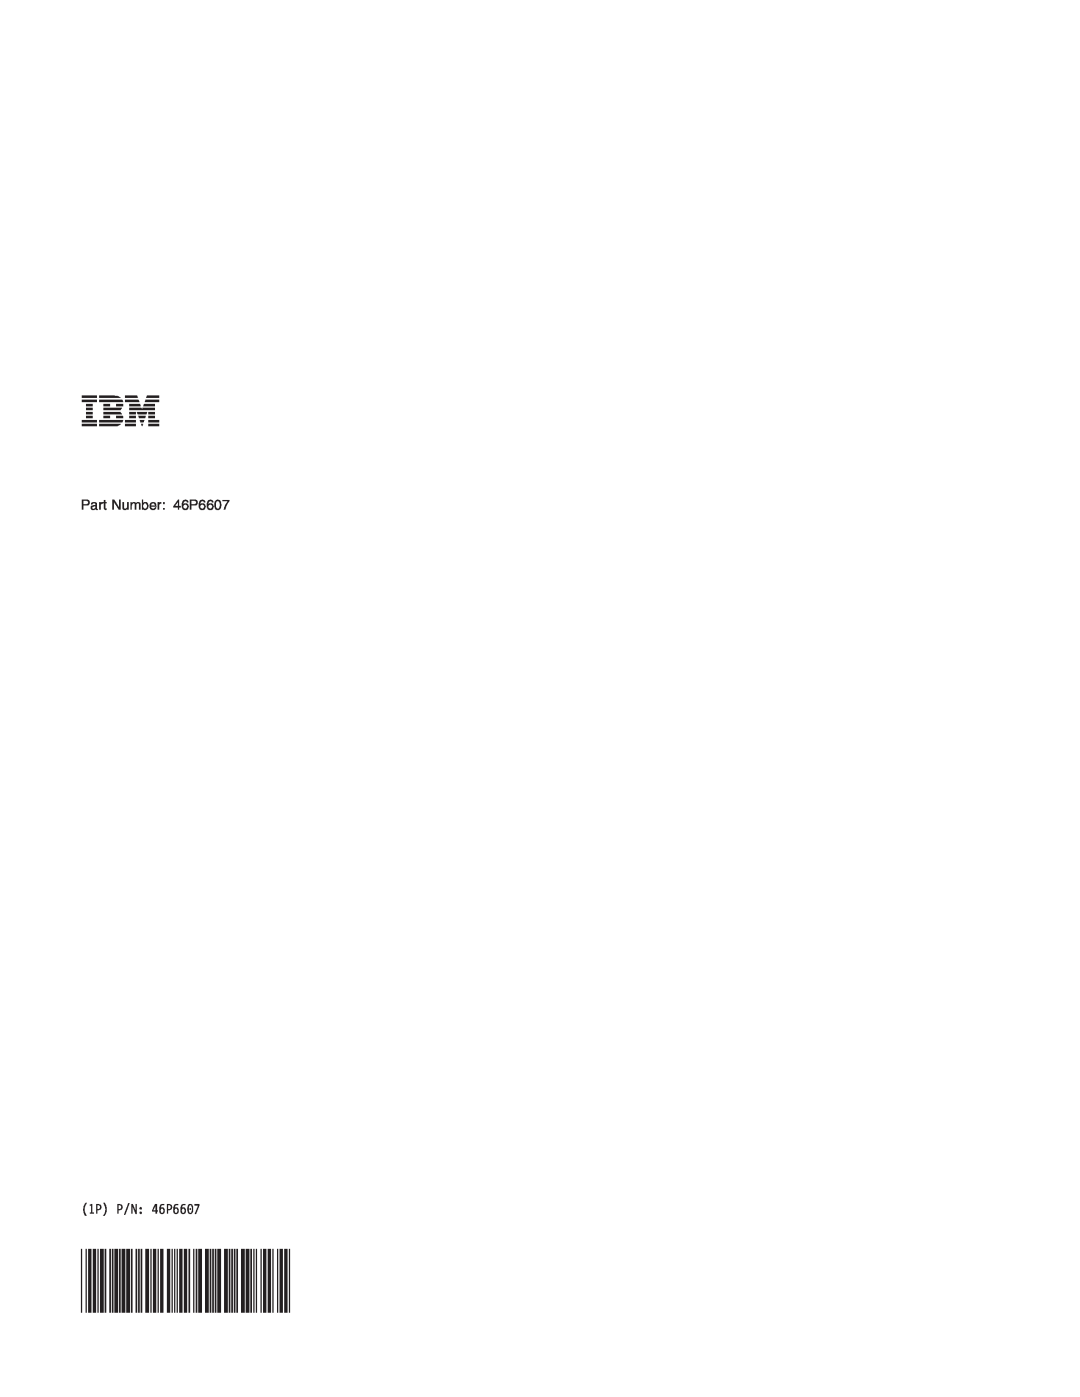 IBM R30 manual Part Number 46P6607, 1P P/N 46P6607 